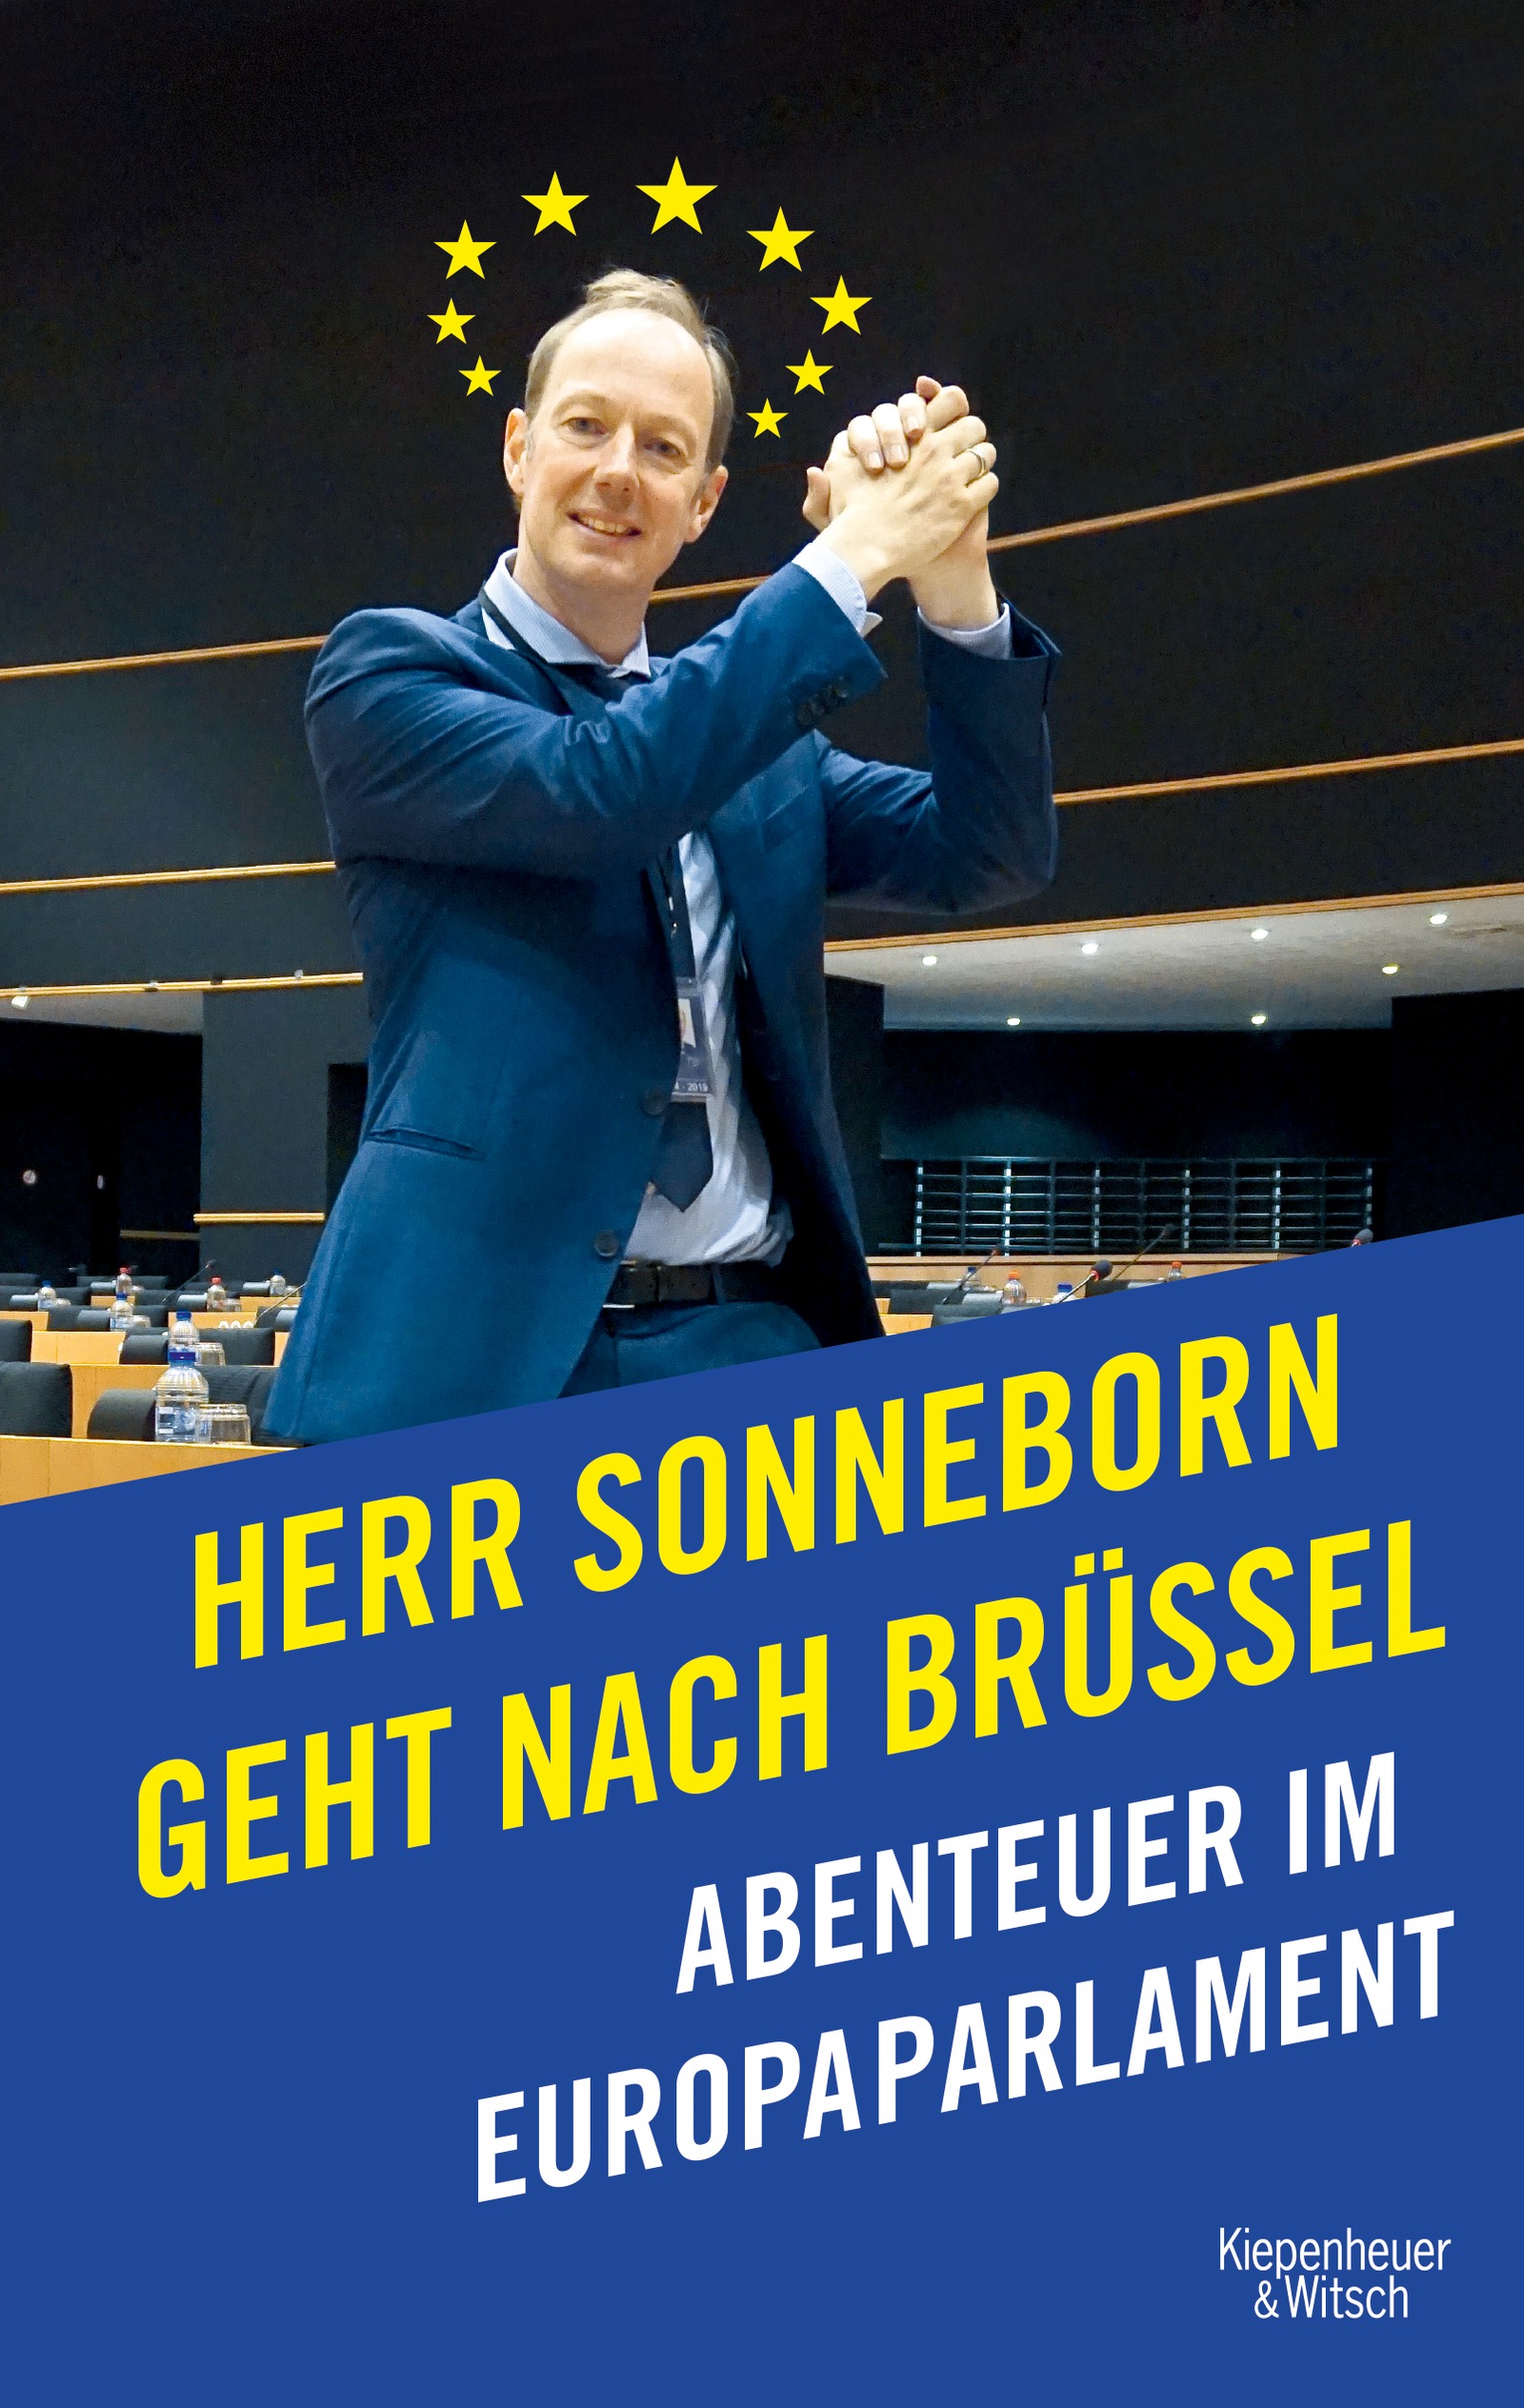 Hardcover: Herr Sonneborn geht nach Brüssel